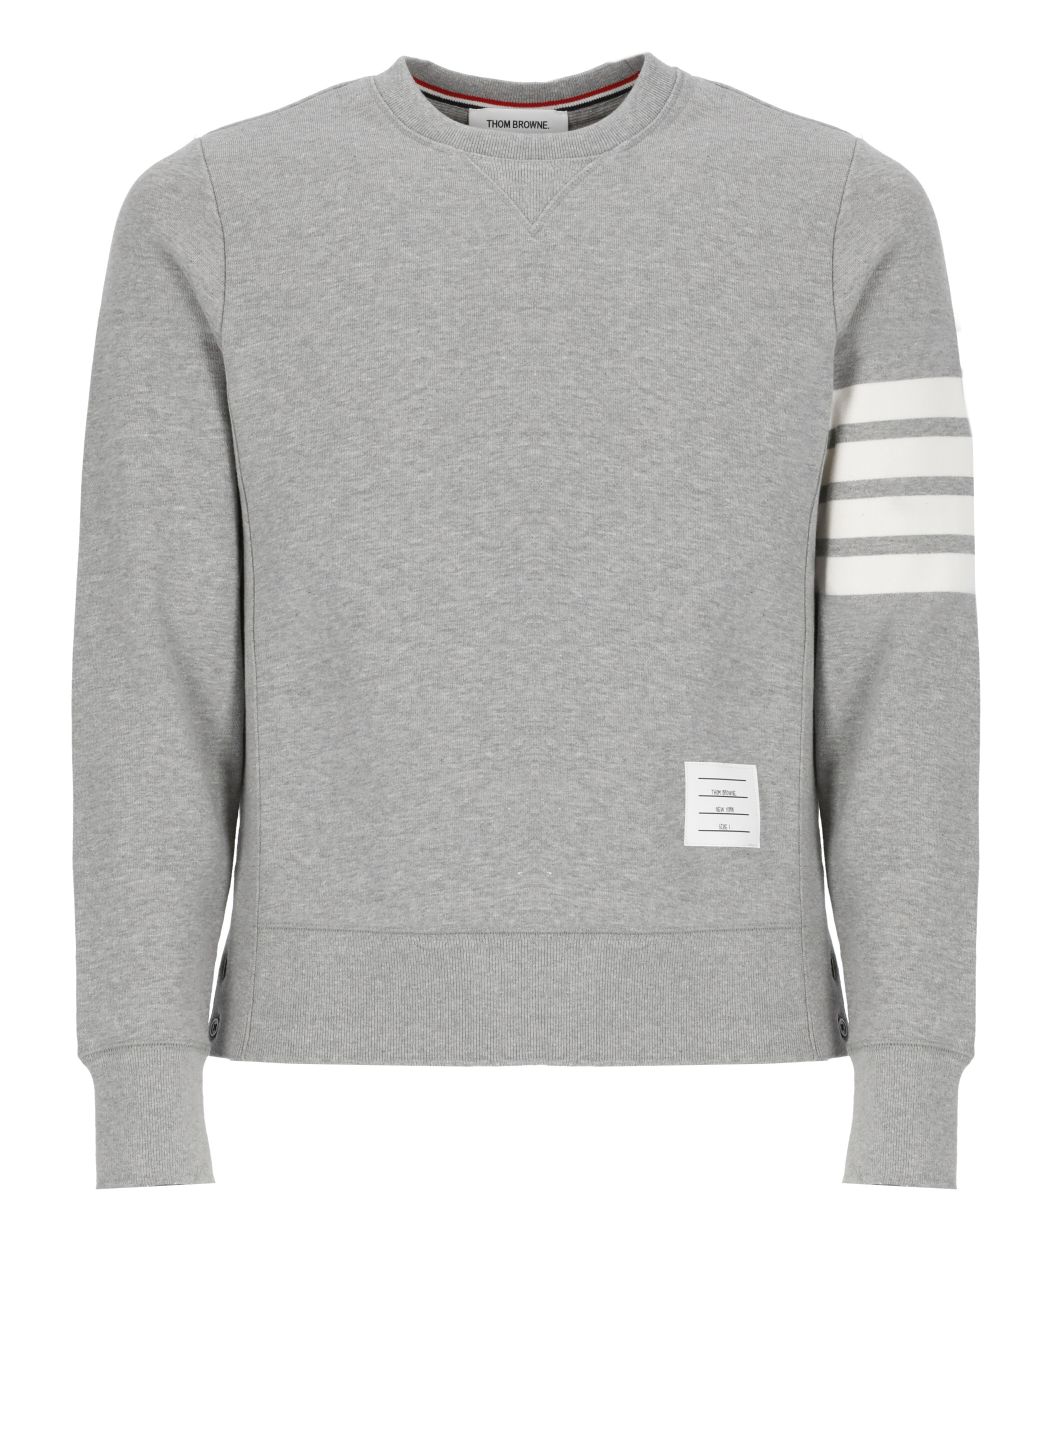 4-Bar sweatshirt